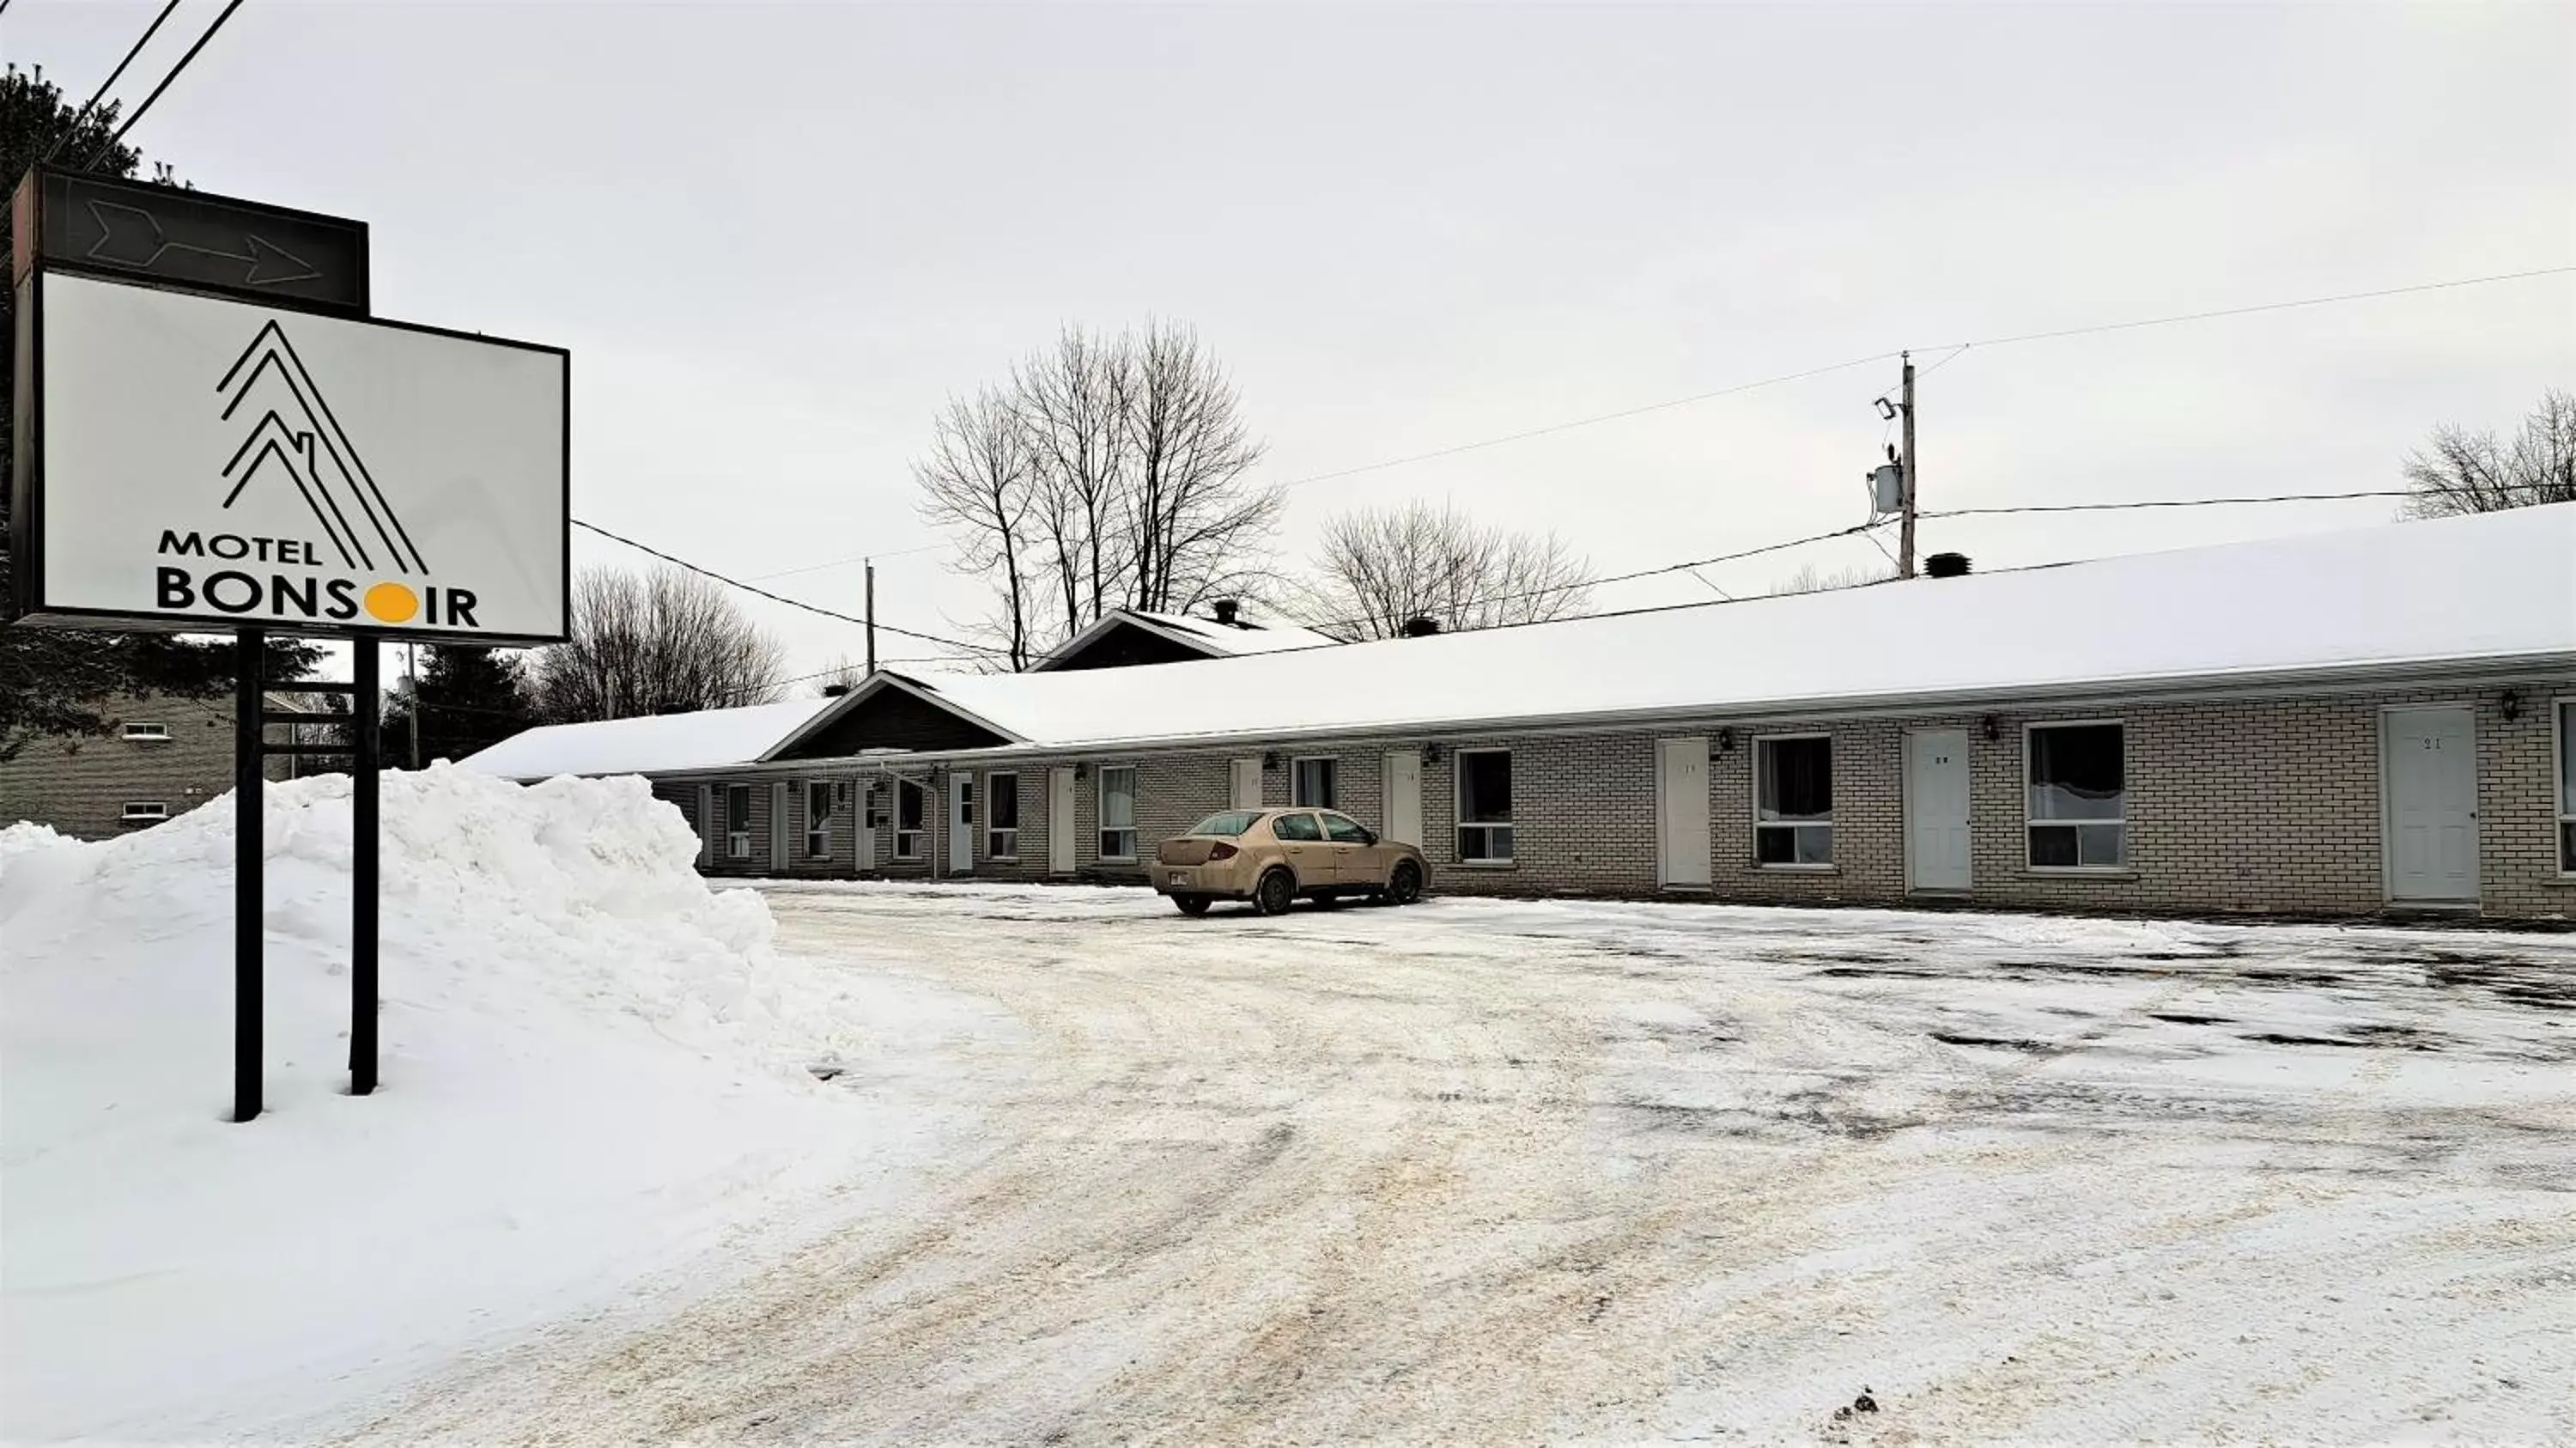 Property building, Winter in Motel Bonsoir